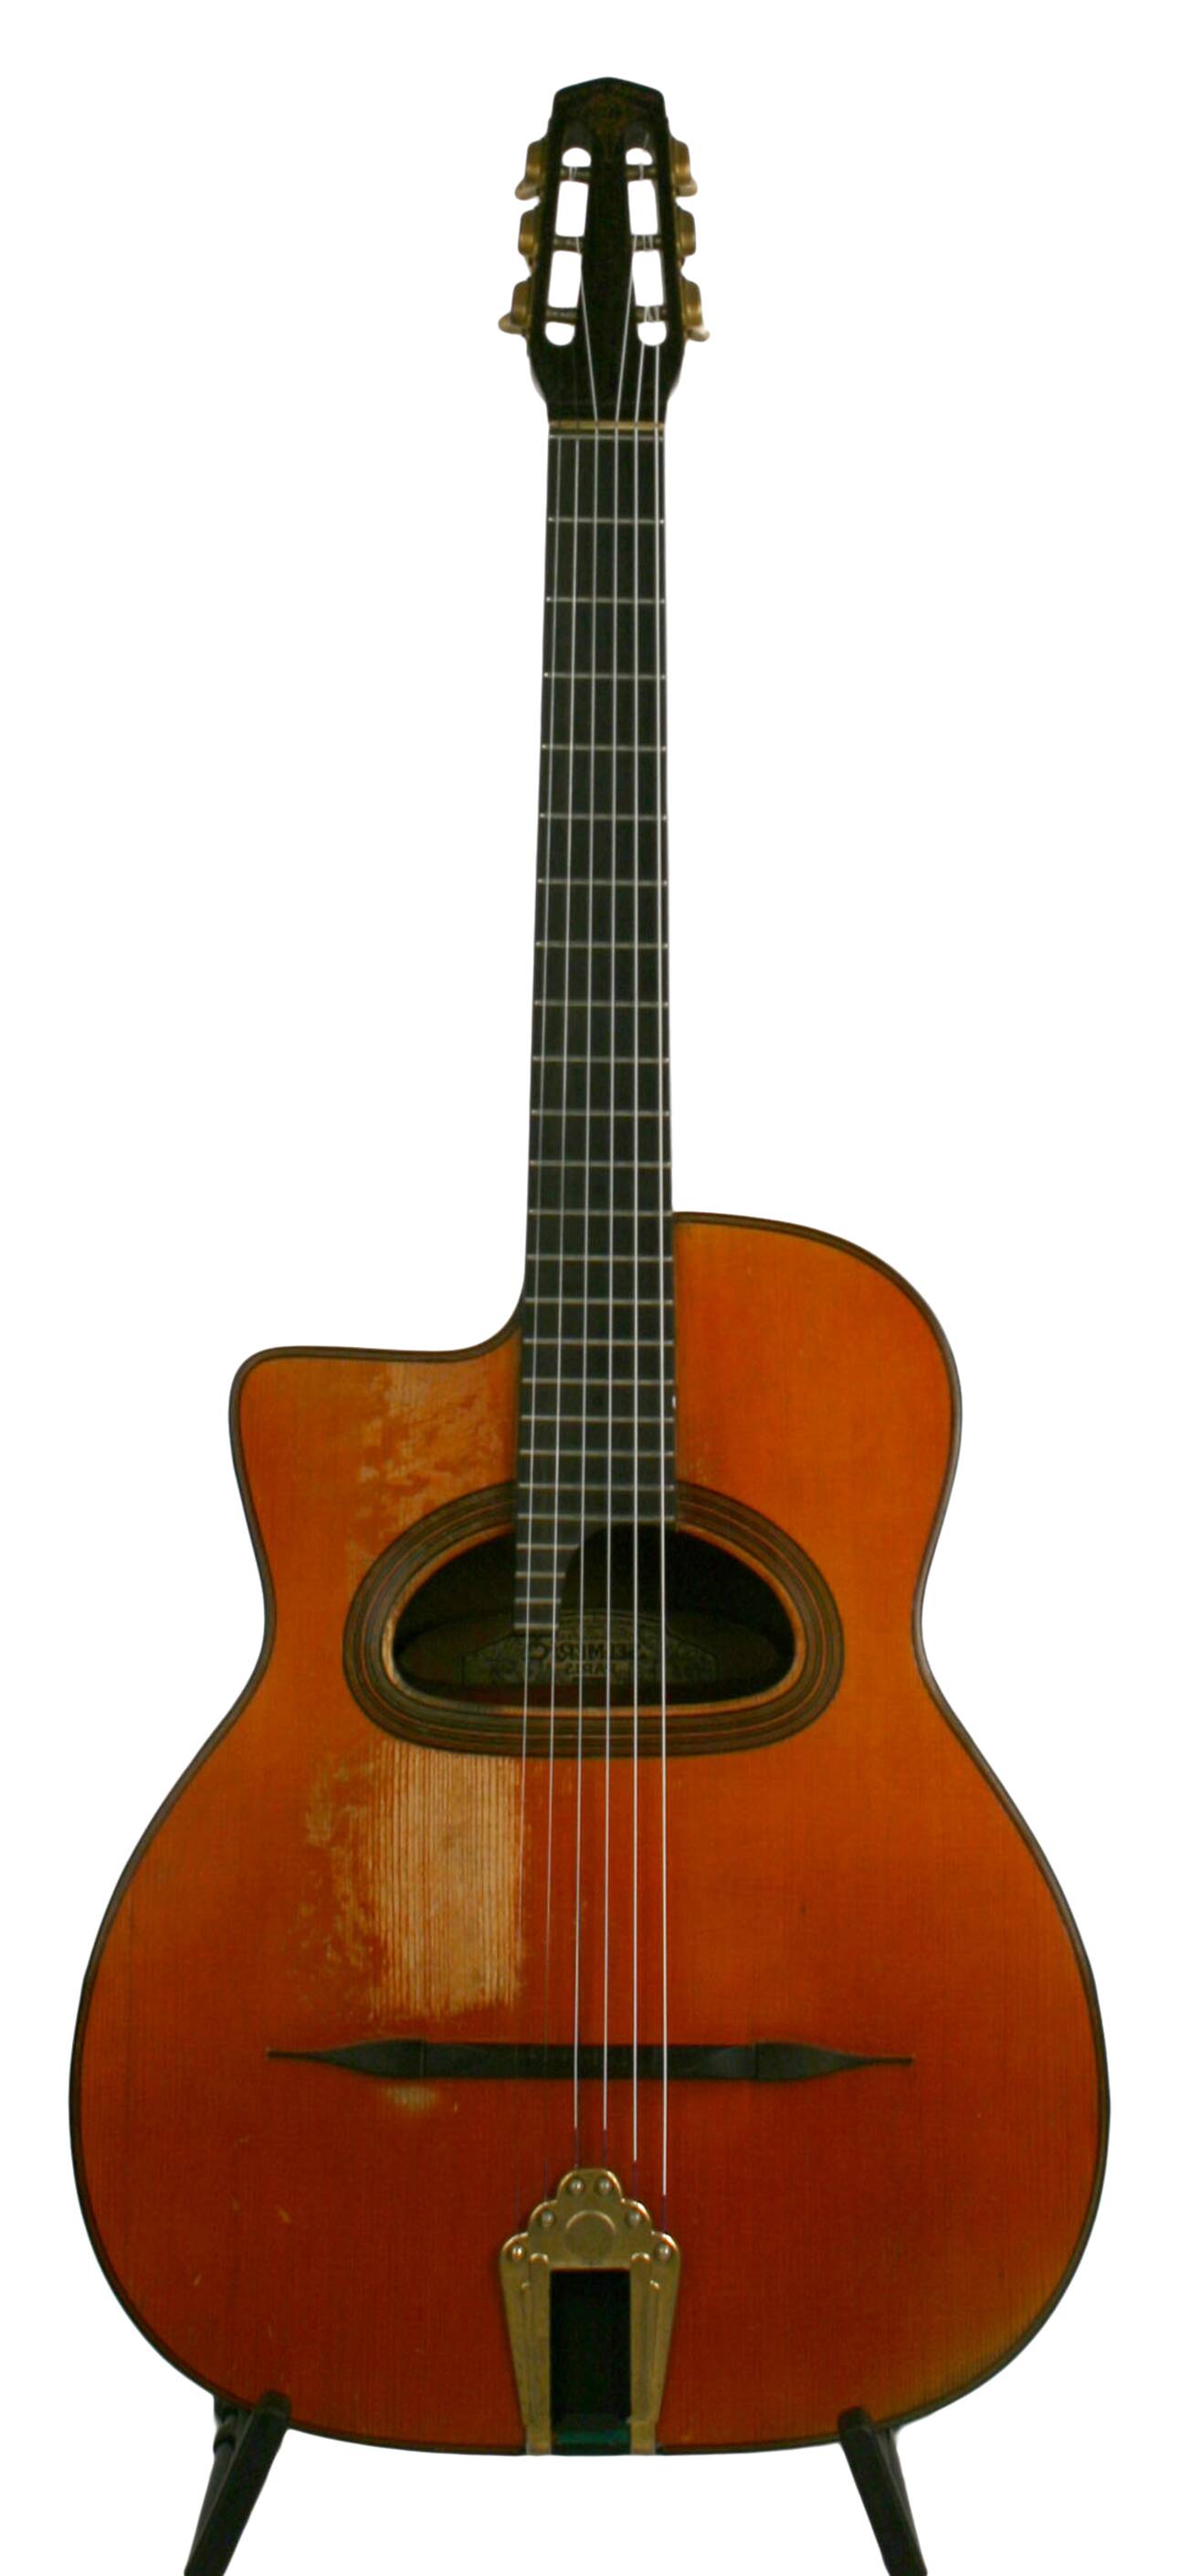 Selmer Guitar for sale in UK | 61 used Selmer Guitars